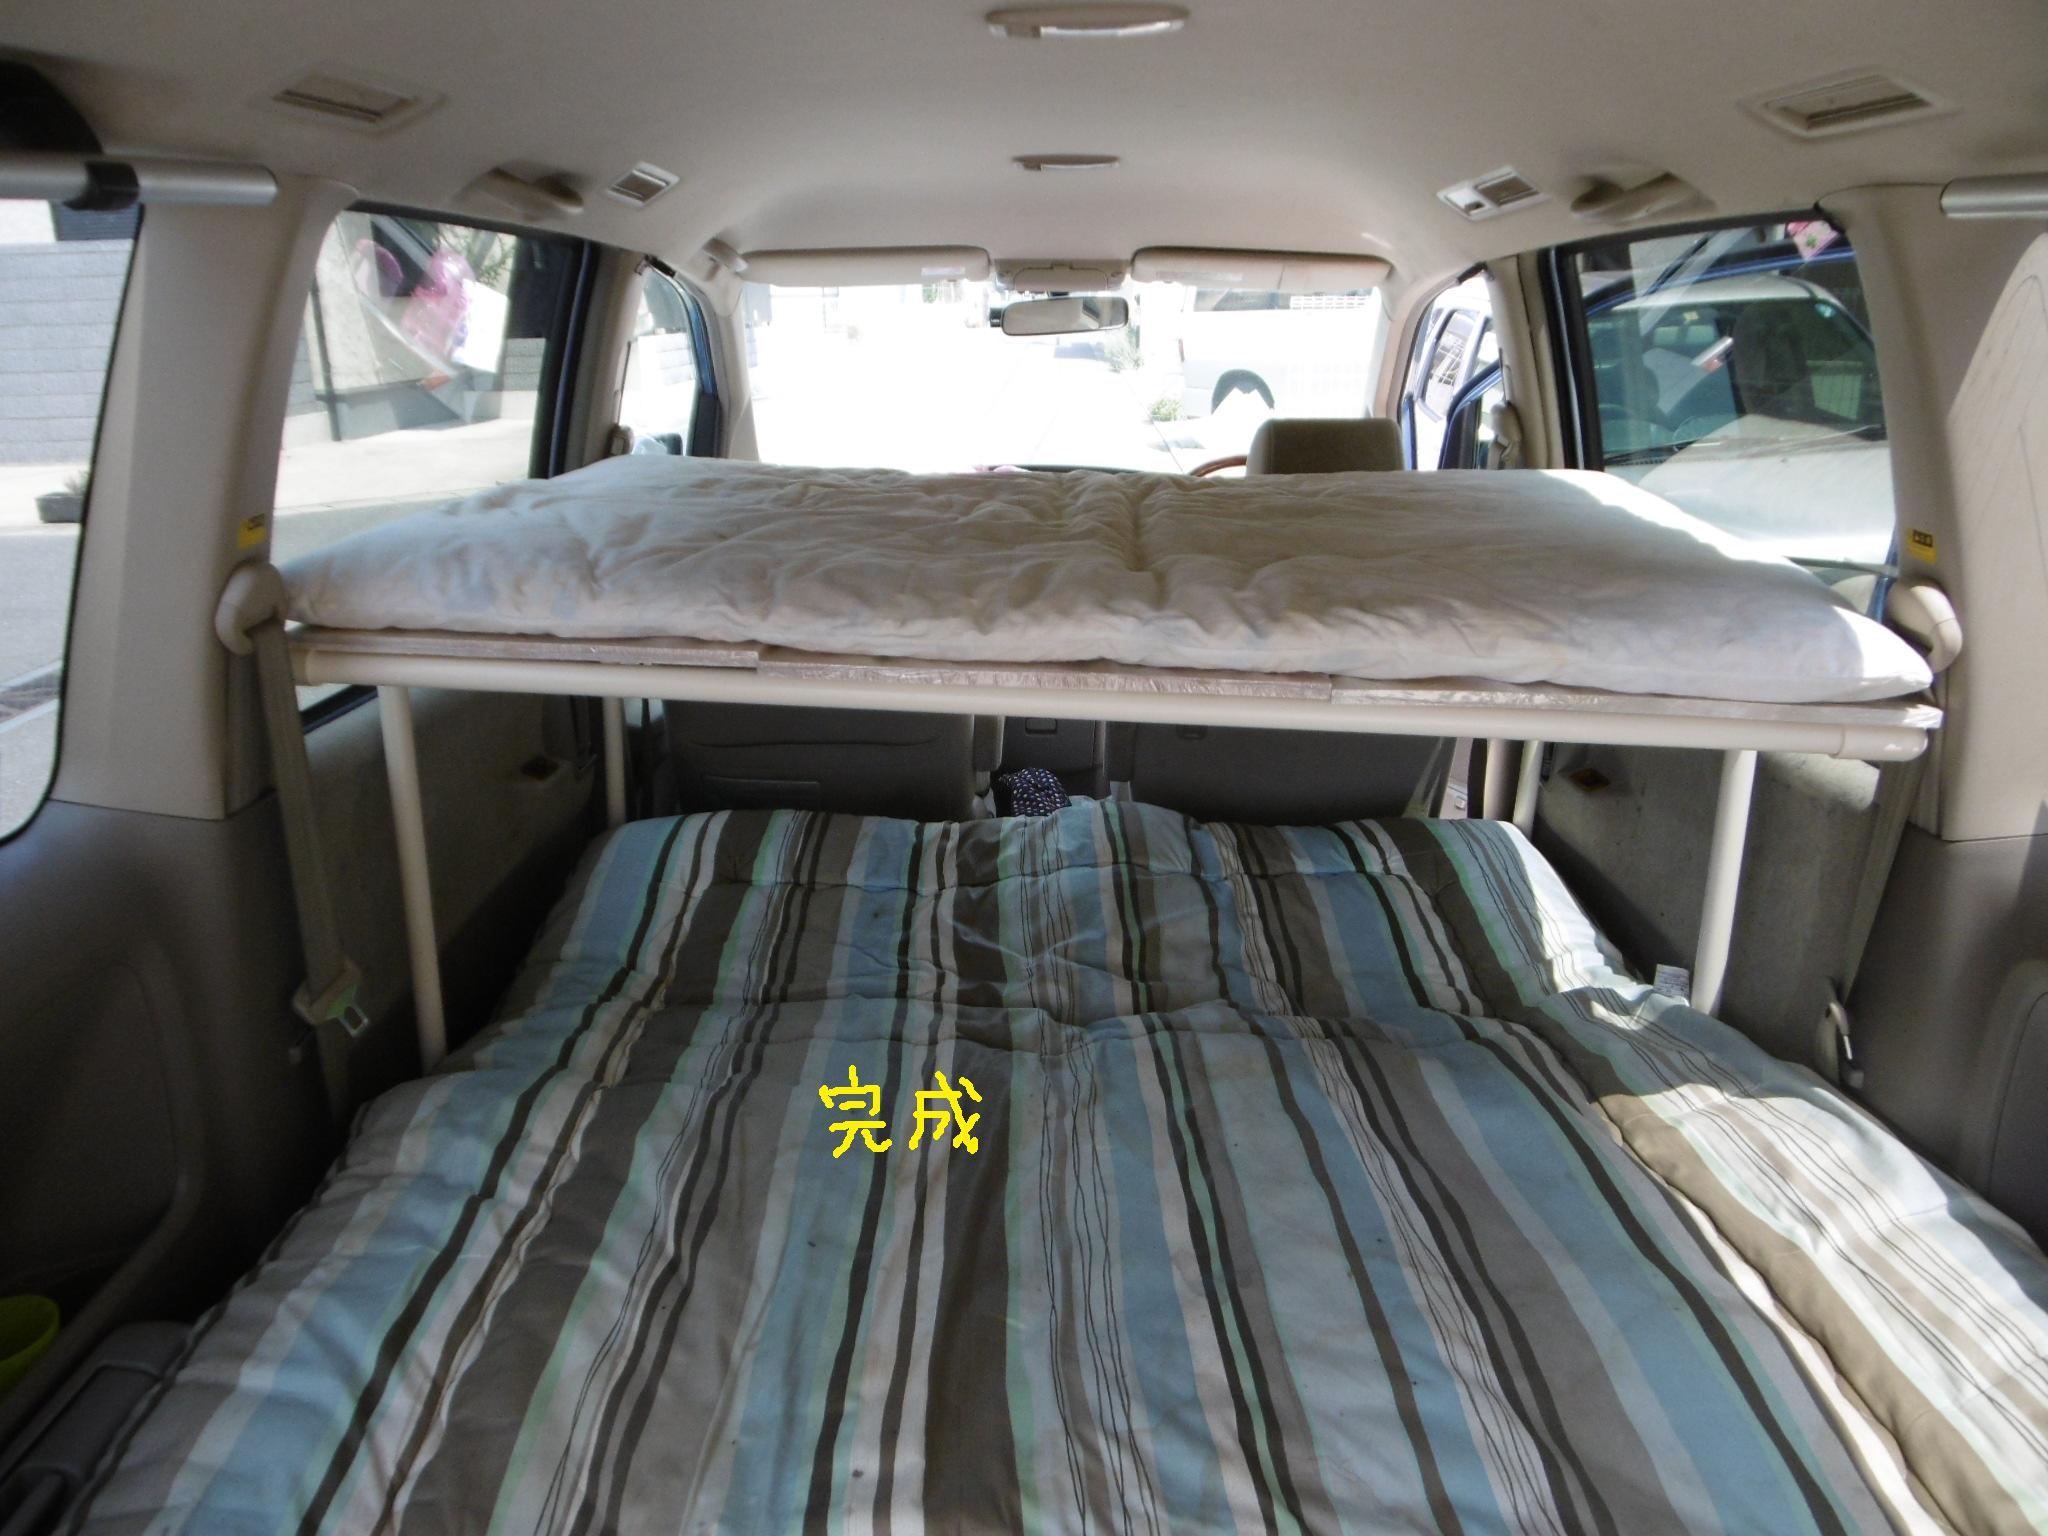 車中泊用2段ベッド改良の構想 育児パパのお気楽生活